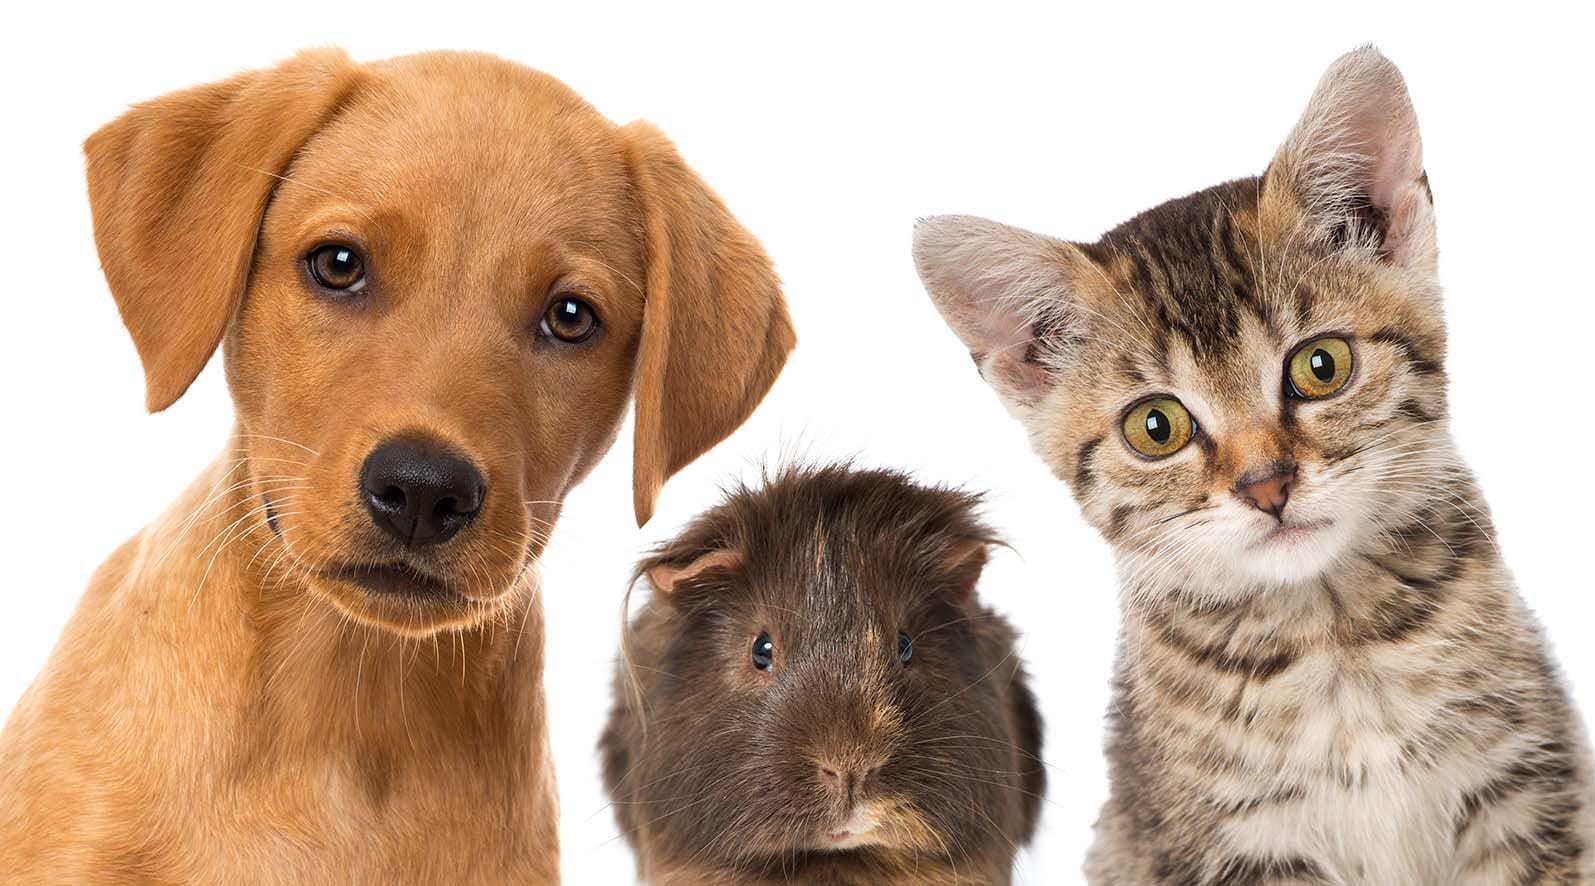 assurance santé animale mutuelle chien chat solly azar